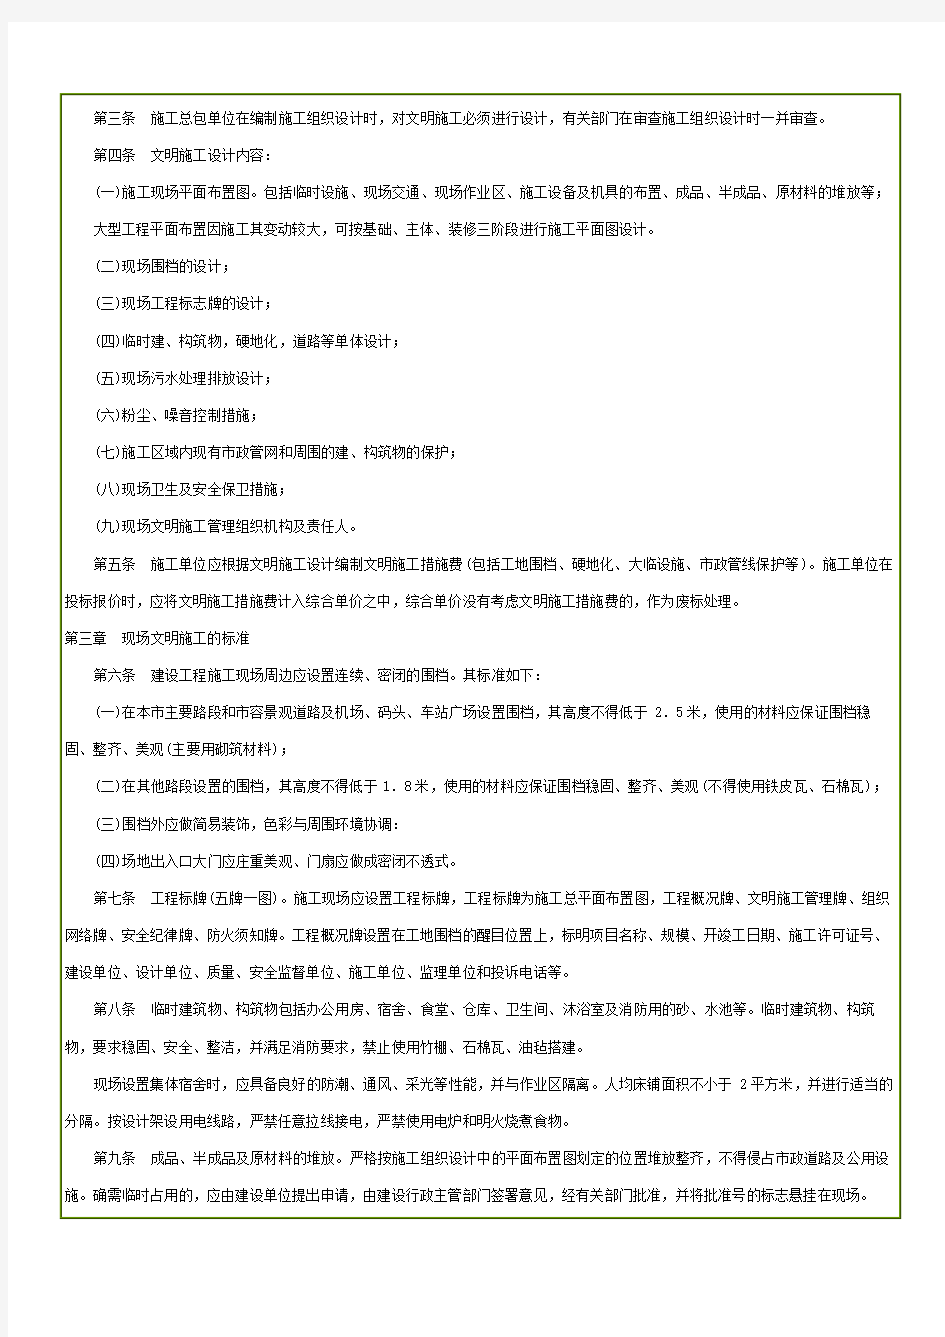 深圳市建设工程现场文明施工管理办法 